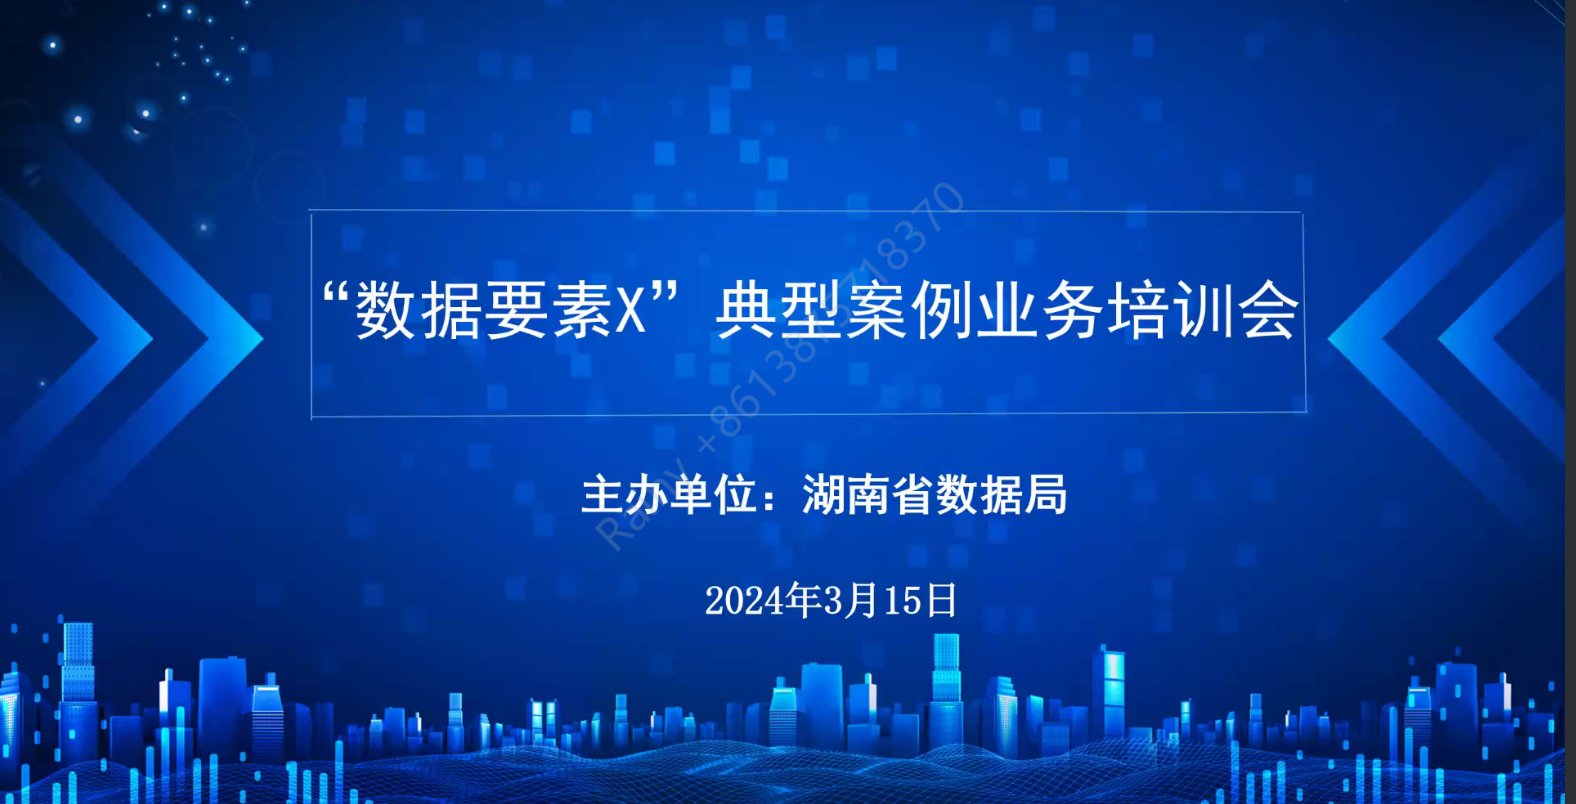 湖南省数据局邀请国脉集团专家参加“数据要素X”典型案例业务培训会